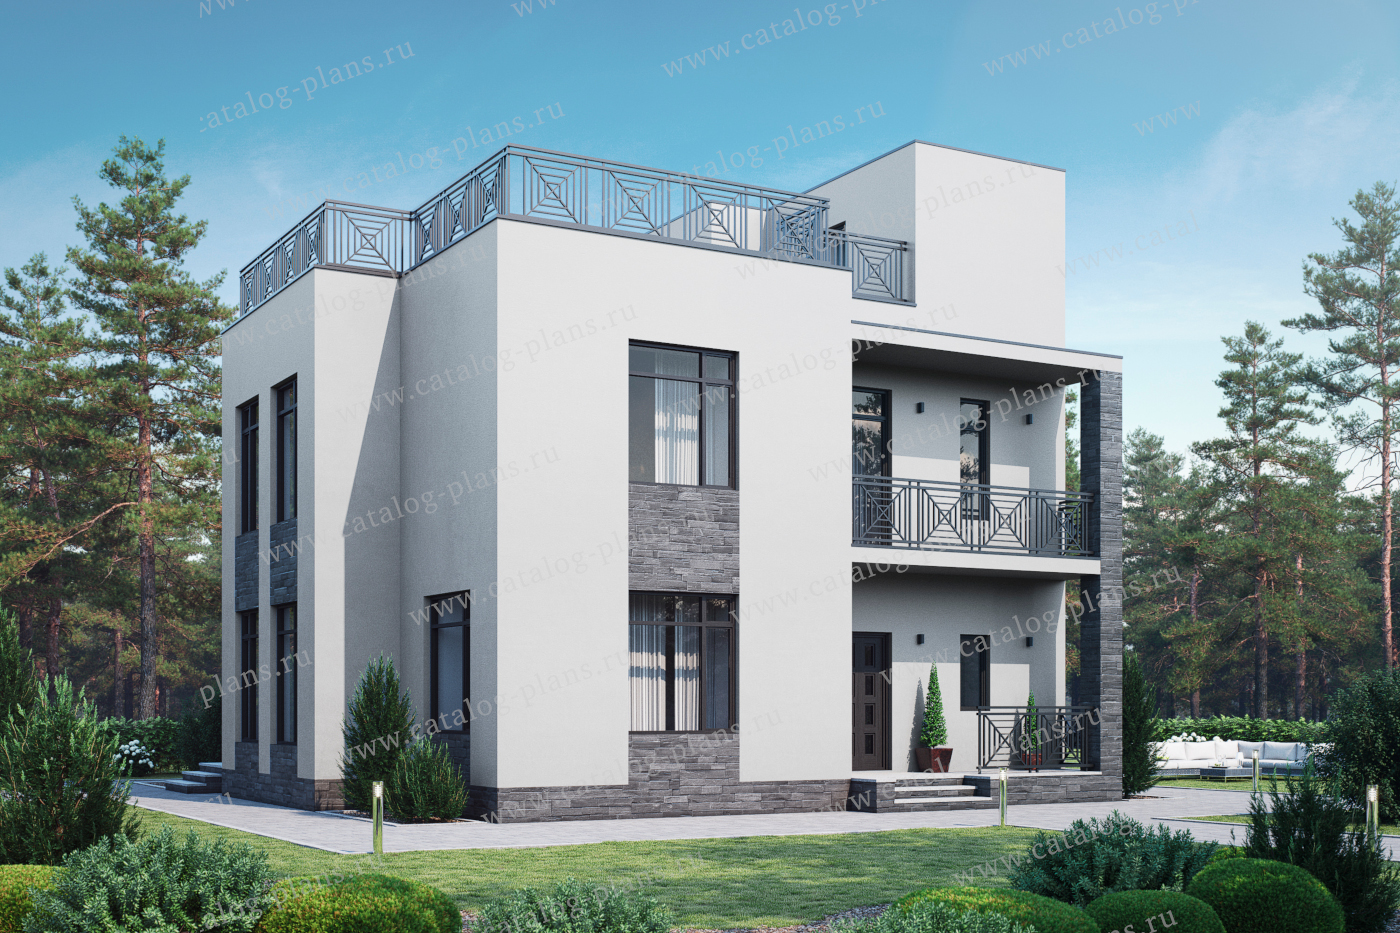 Проект 57-00X, жилой дом, материал - газобетонные блоки 400, количество этажей - 3, архитектурный стиль - хай-тек, фундамент - монолитная ж/б плита